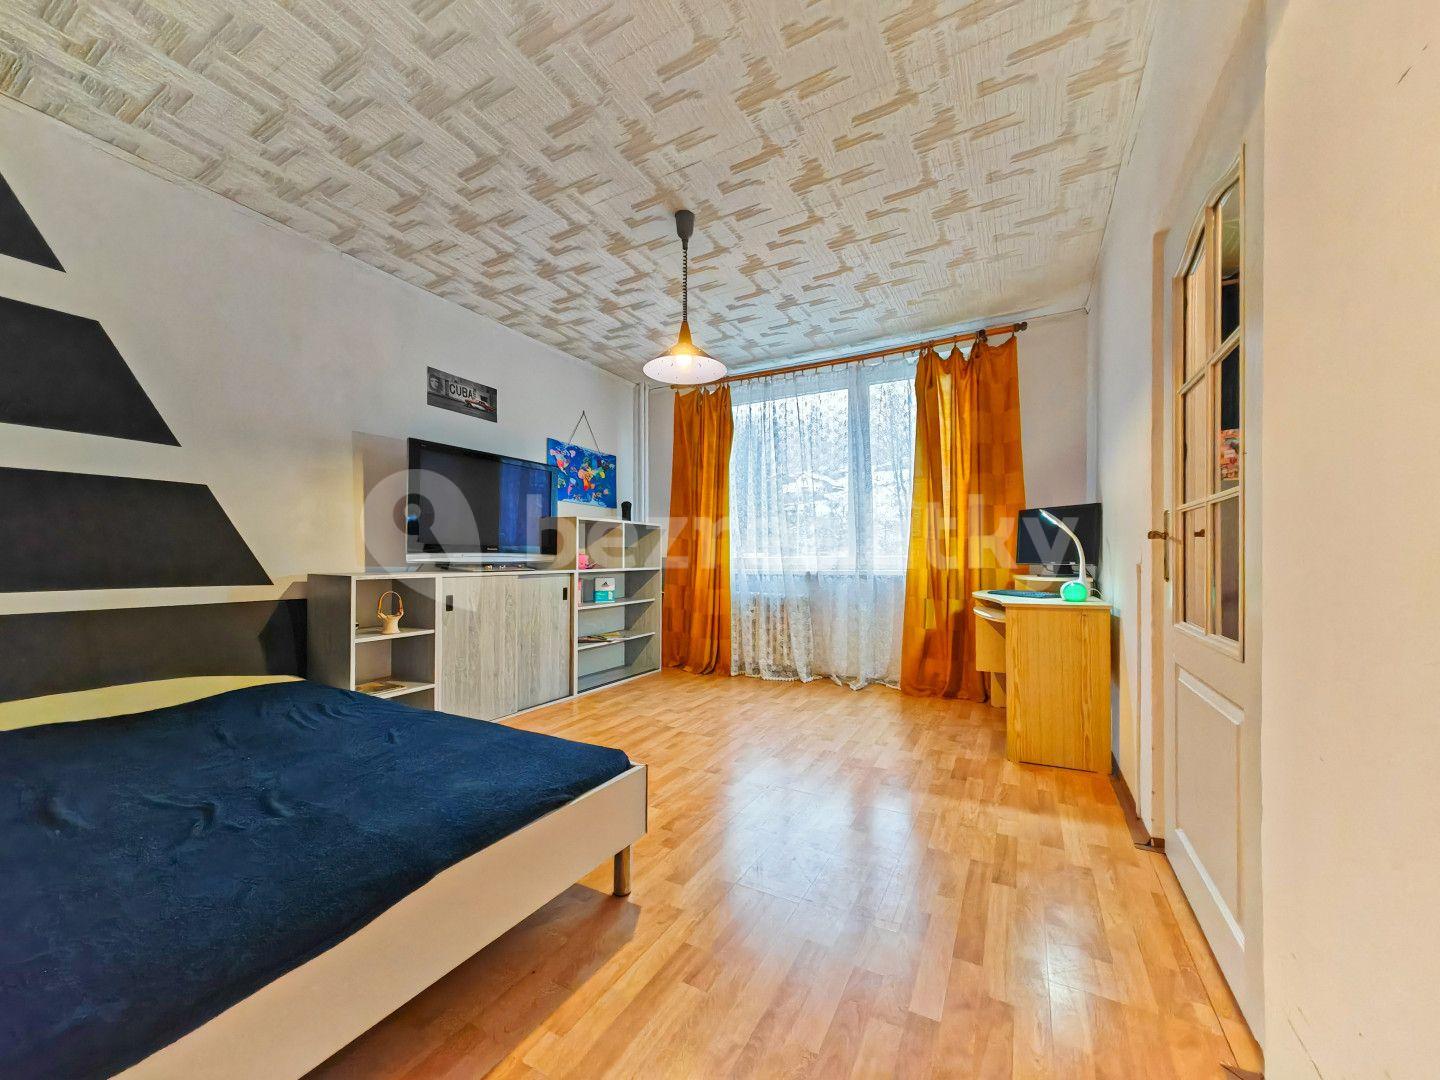 3 bedroom flat for sale, 79 m², Kostelecká, Náchod, Královéhradecký Region